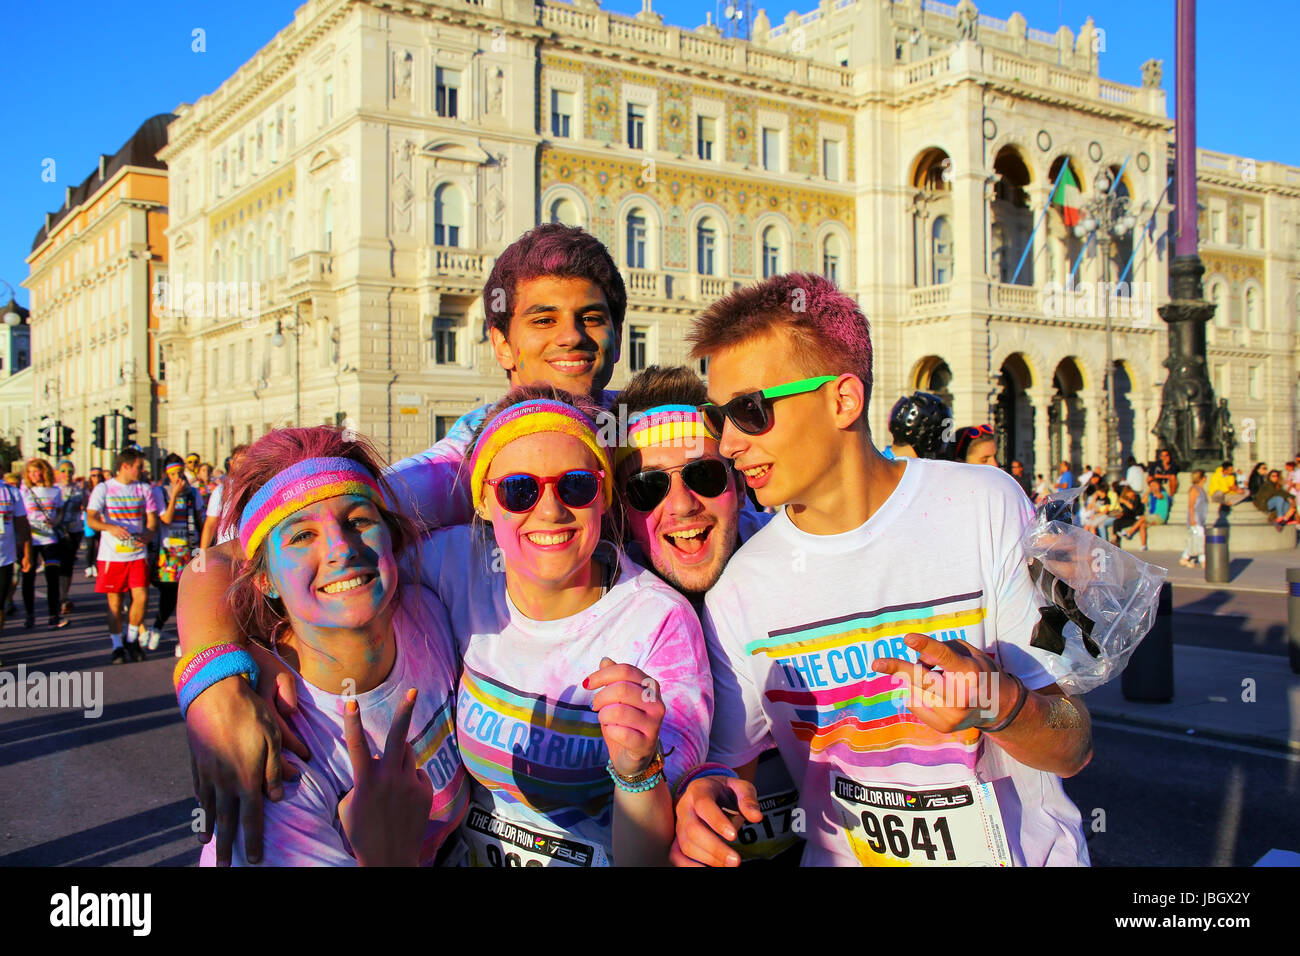 Le persone che posano per una foto durante il colore eseguire a Trieste, Italia. Trieste è la capitale della regione autonoma Friuli Venezia Giulia Foto Stock